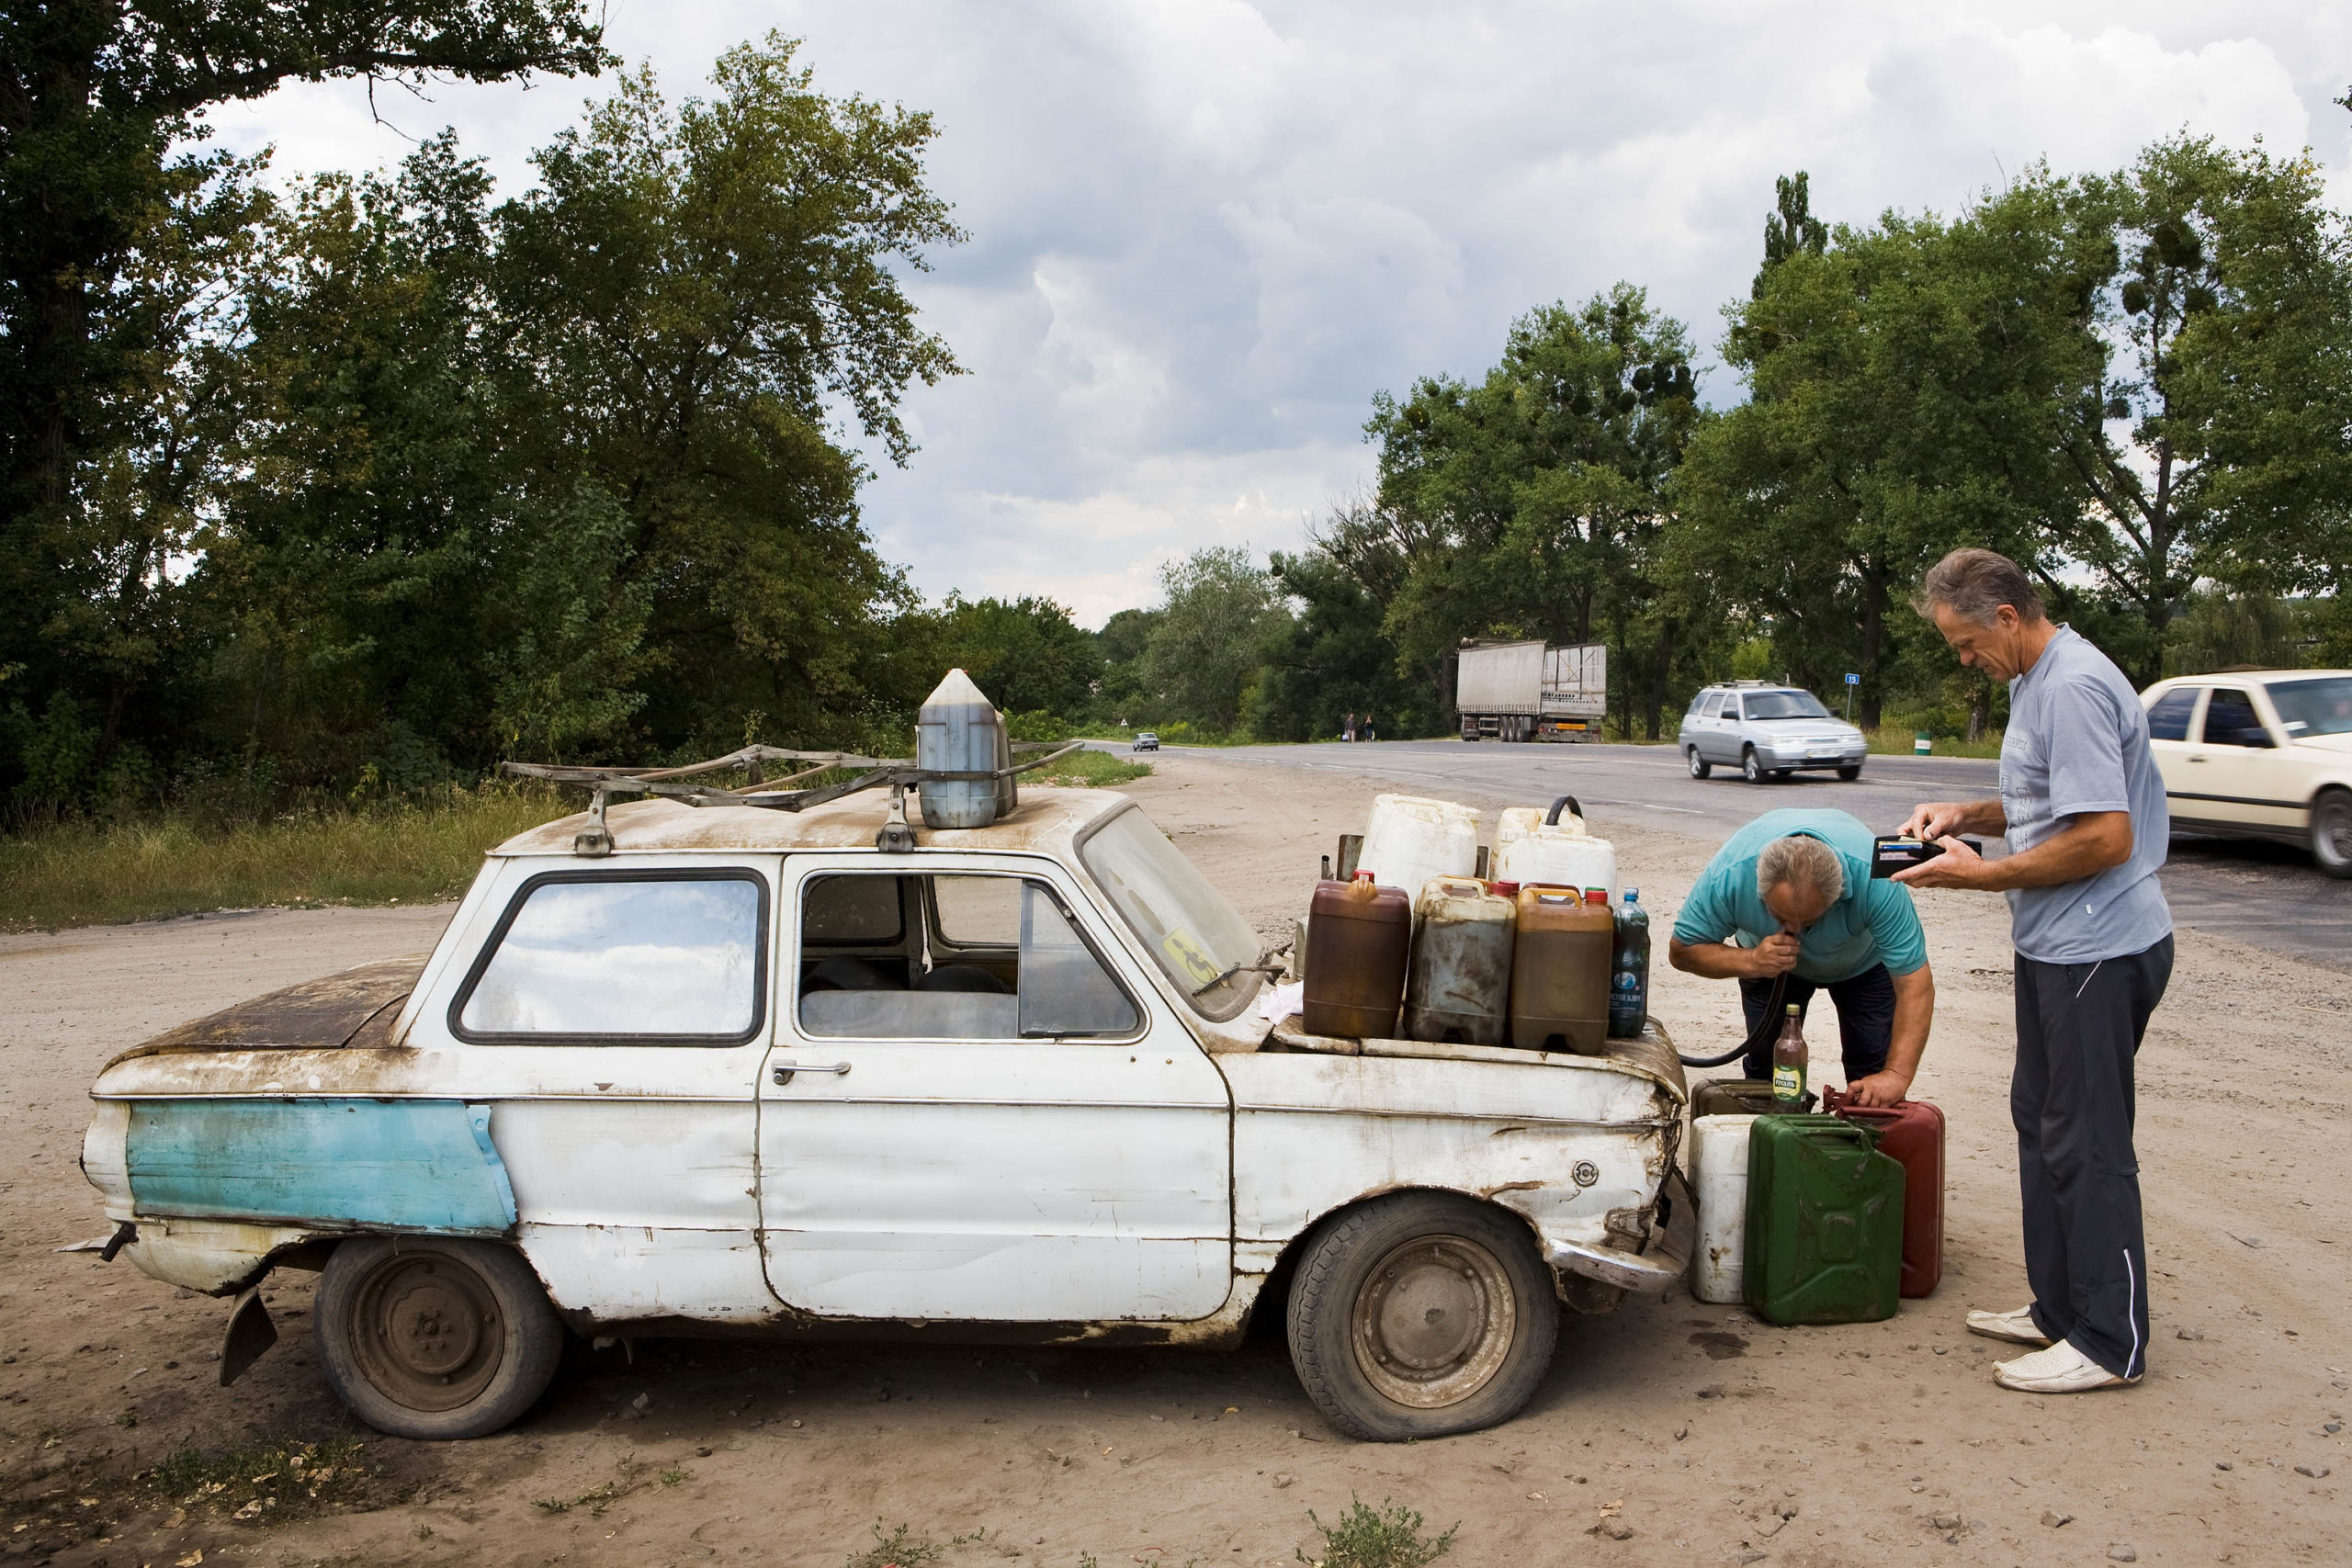 Zaporozhets; Karatsjivka, Ukraine (Leonti Michailovitsj sells stolen diesel)